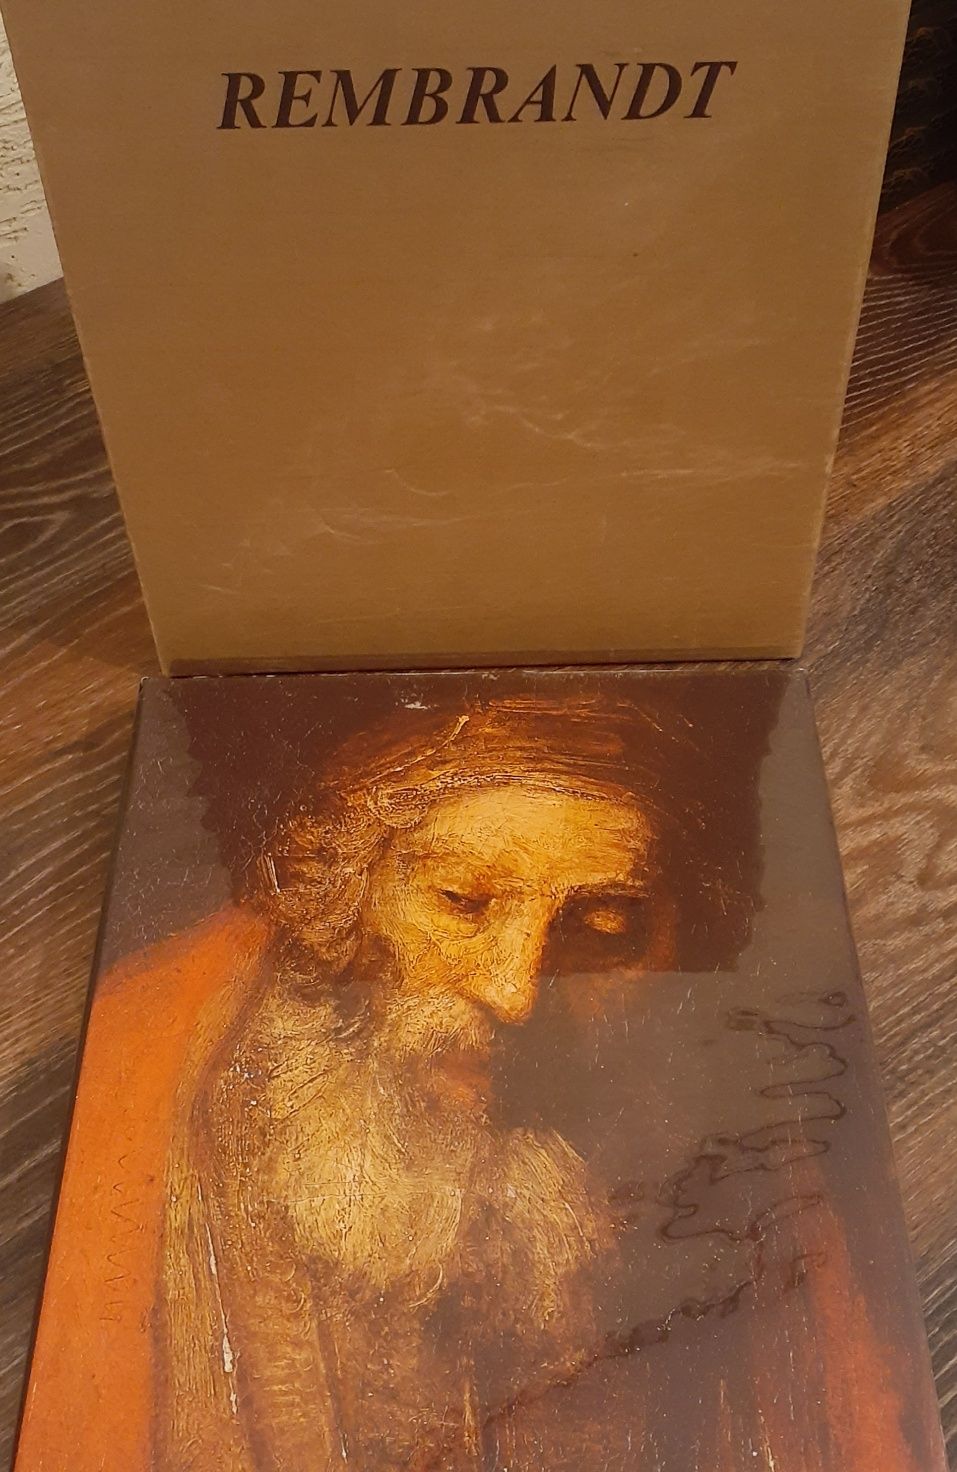 Книга-альбом Рембранд